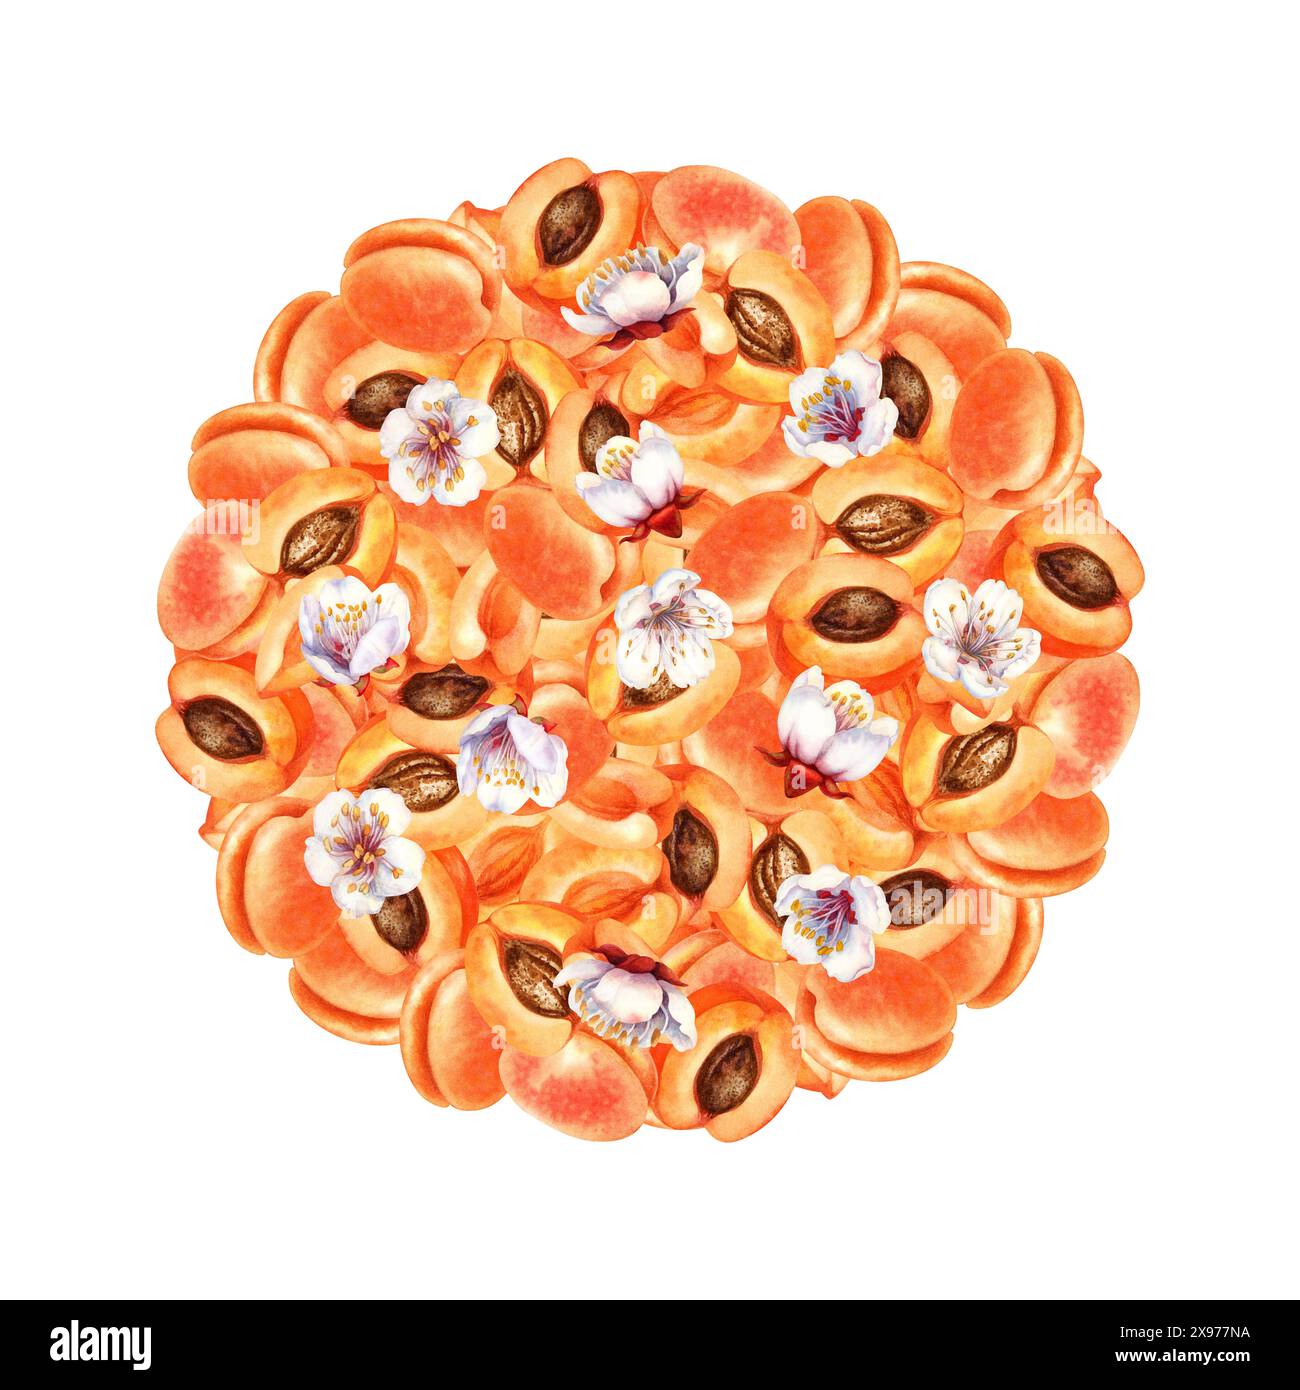 Composizione a base di frutti rotondi di albicocche mature arancio-rosa. Illustrazione acquerello con colore albicocca alla moda per il design del modello del giorno di raccolta, etichette e cuccioli Foto Stock